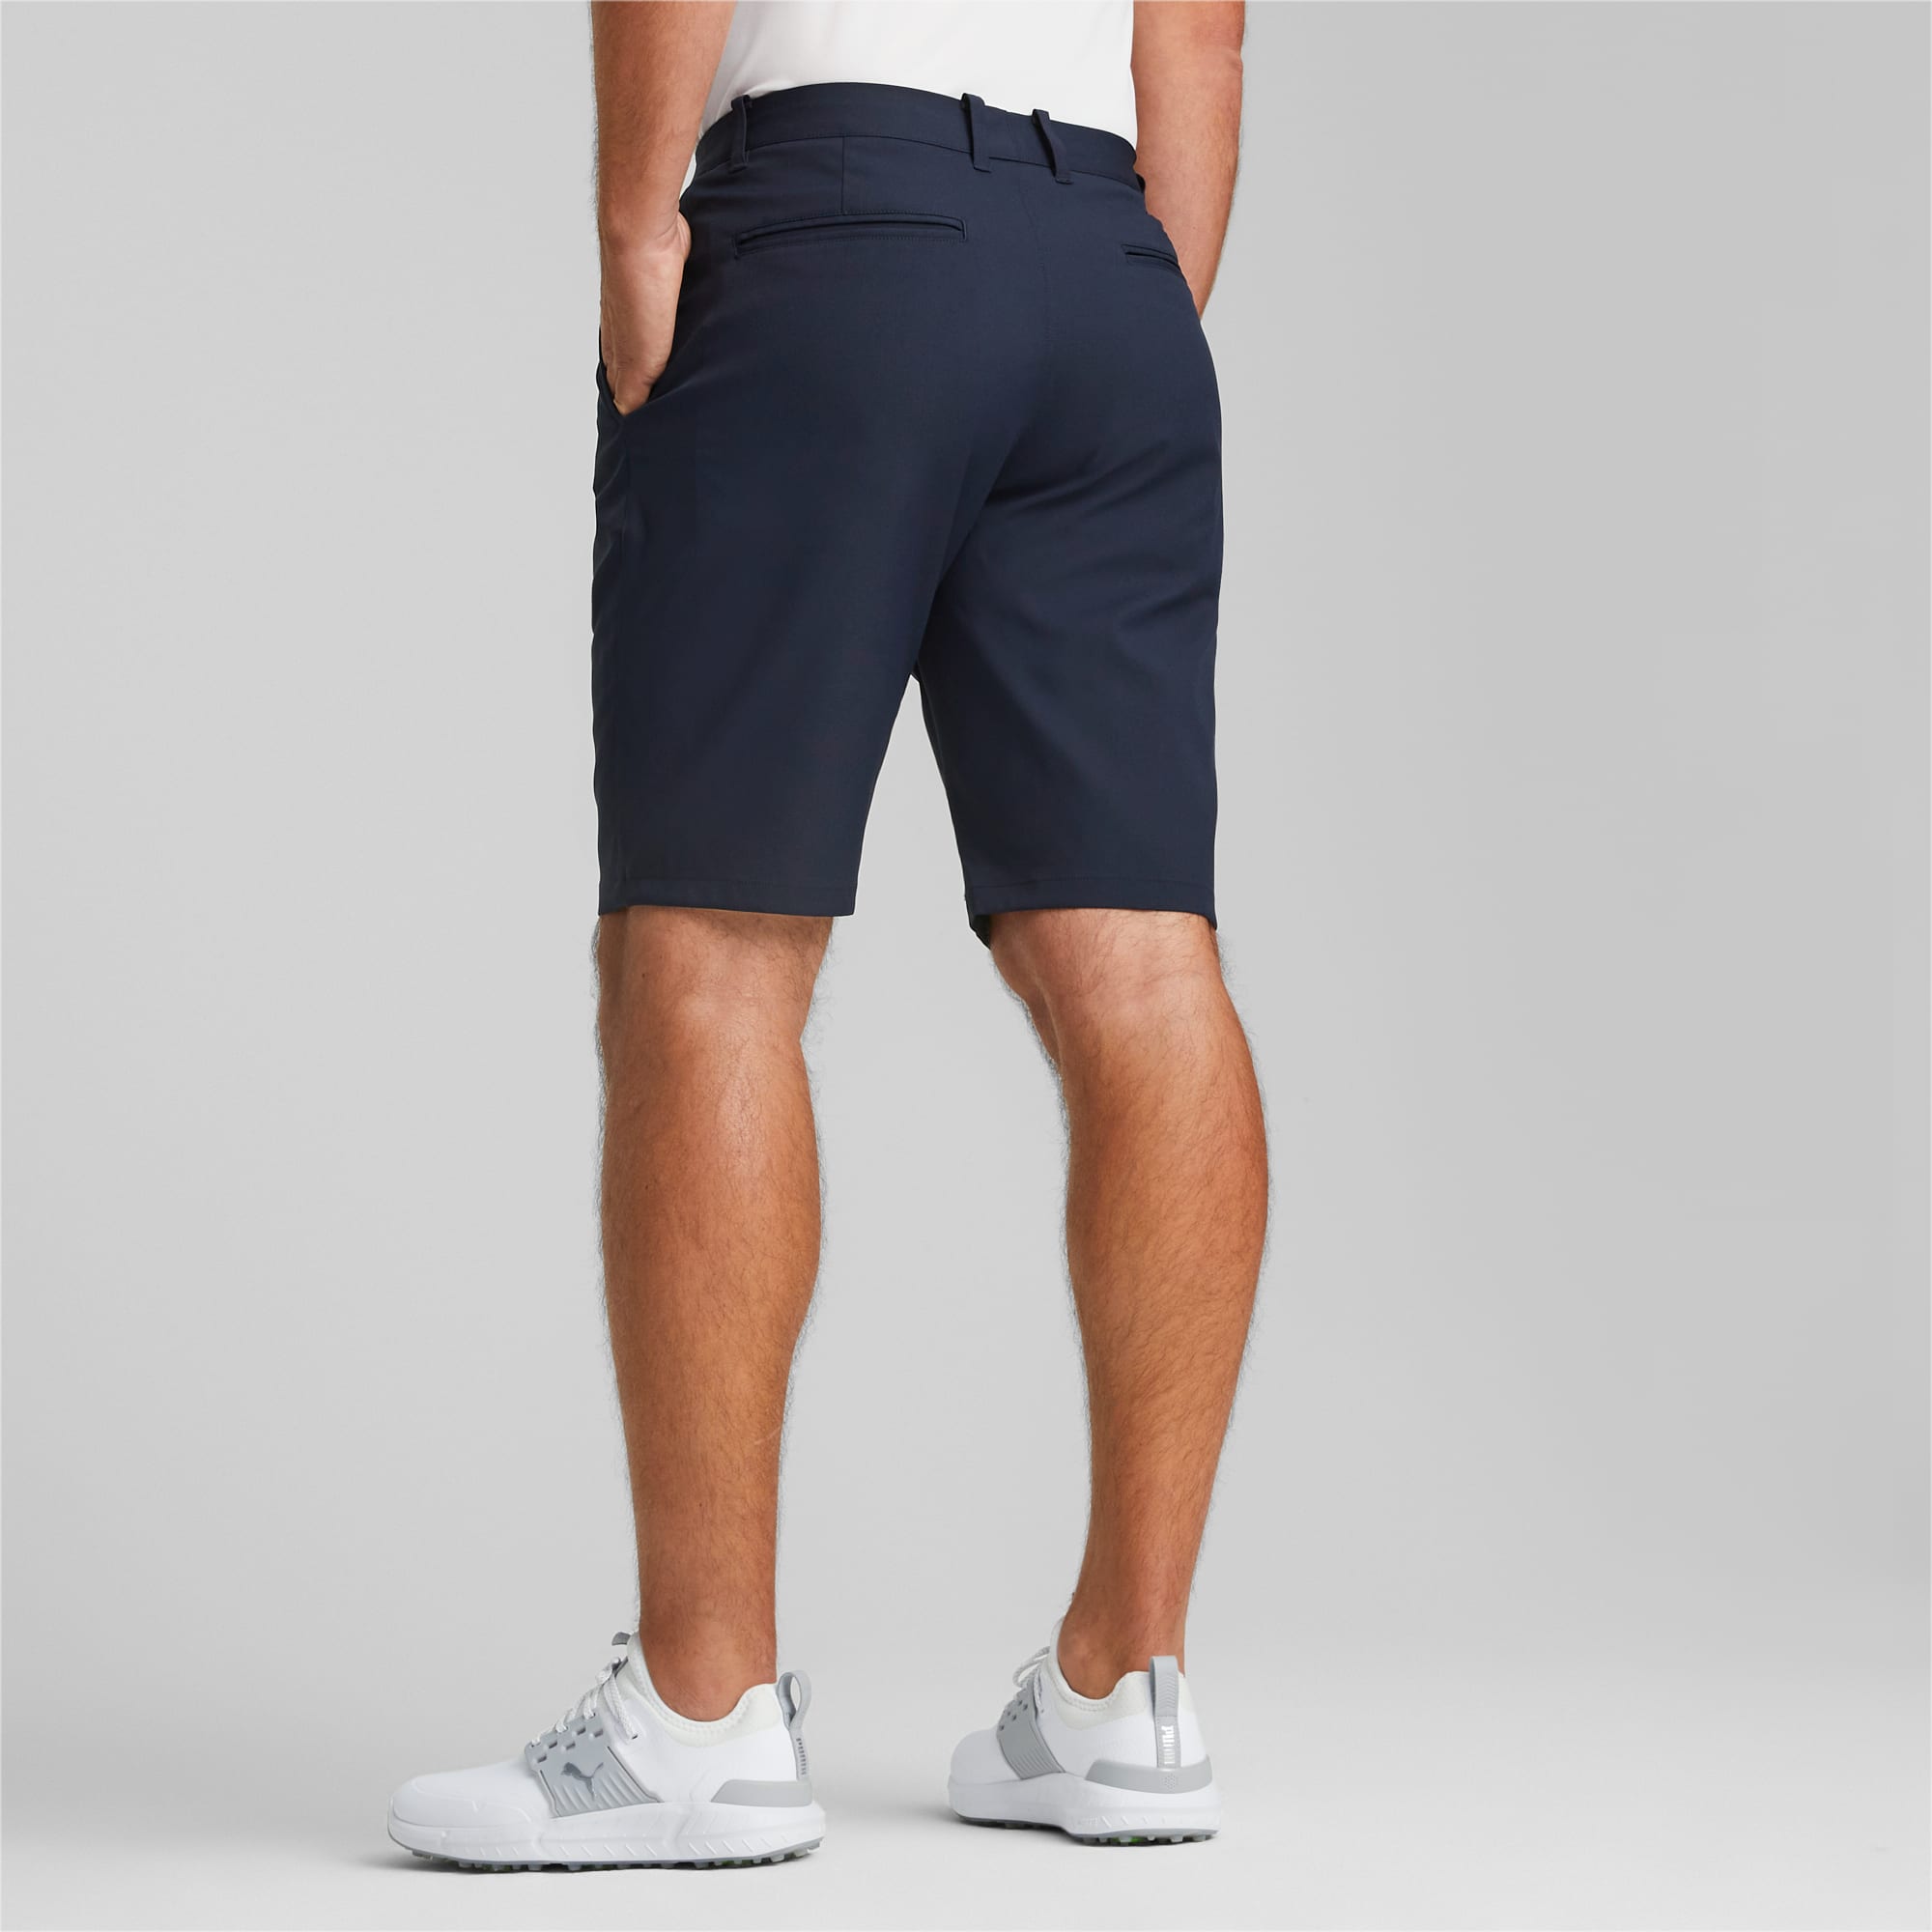 PUMA Shorts De Golf Dealer 10 Para Hombre, Azul